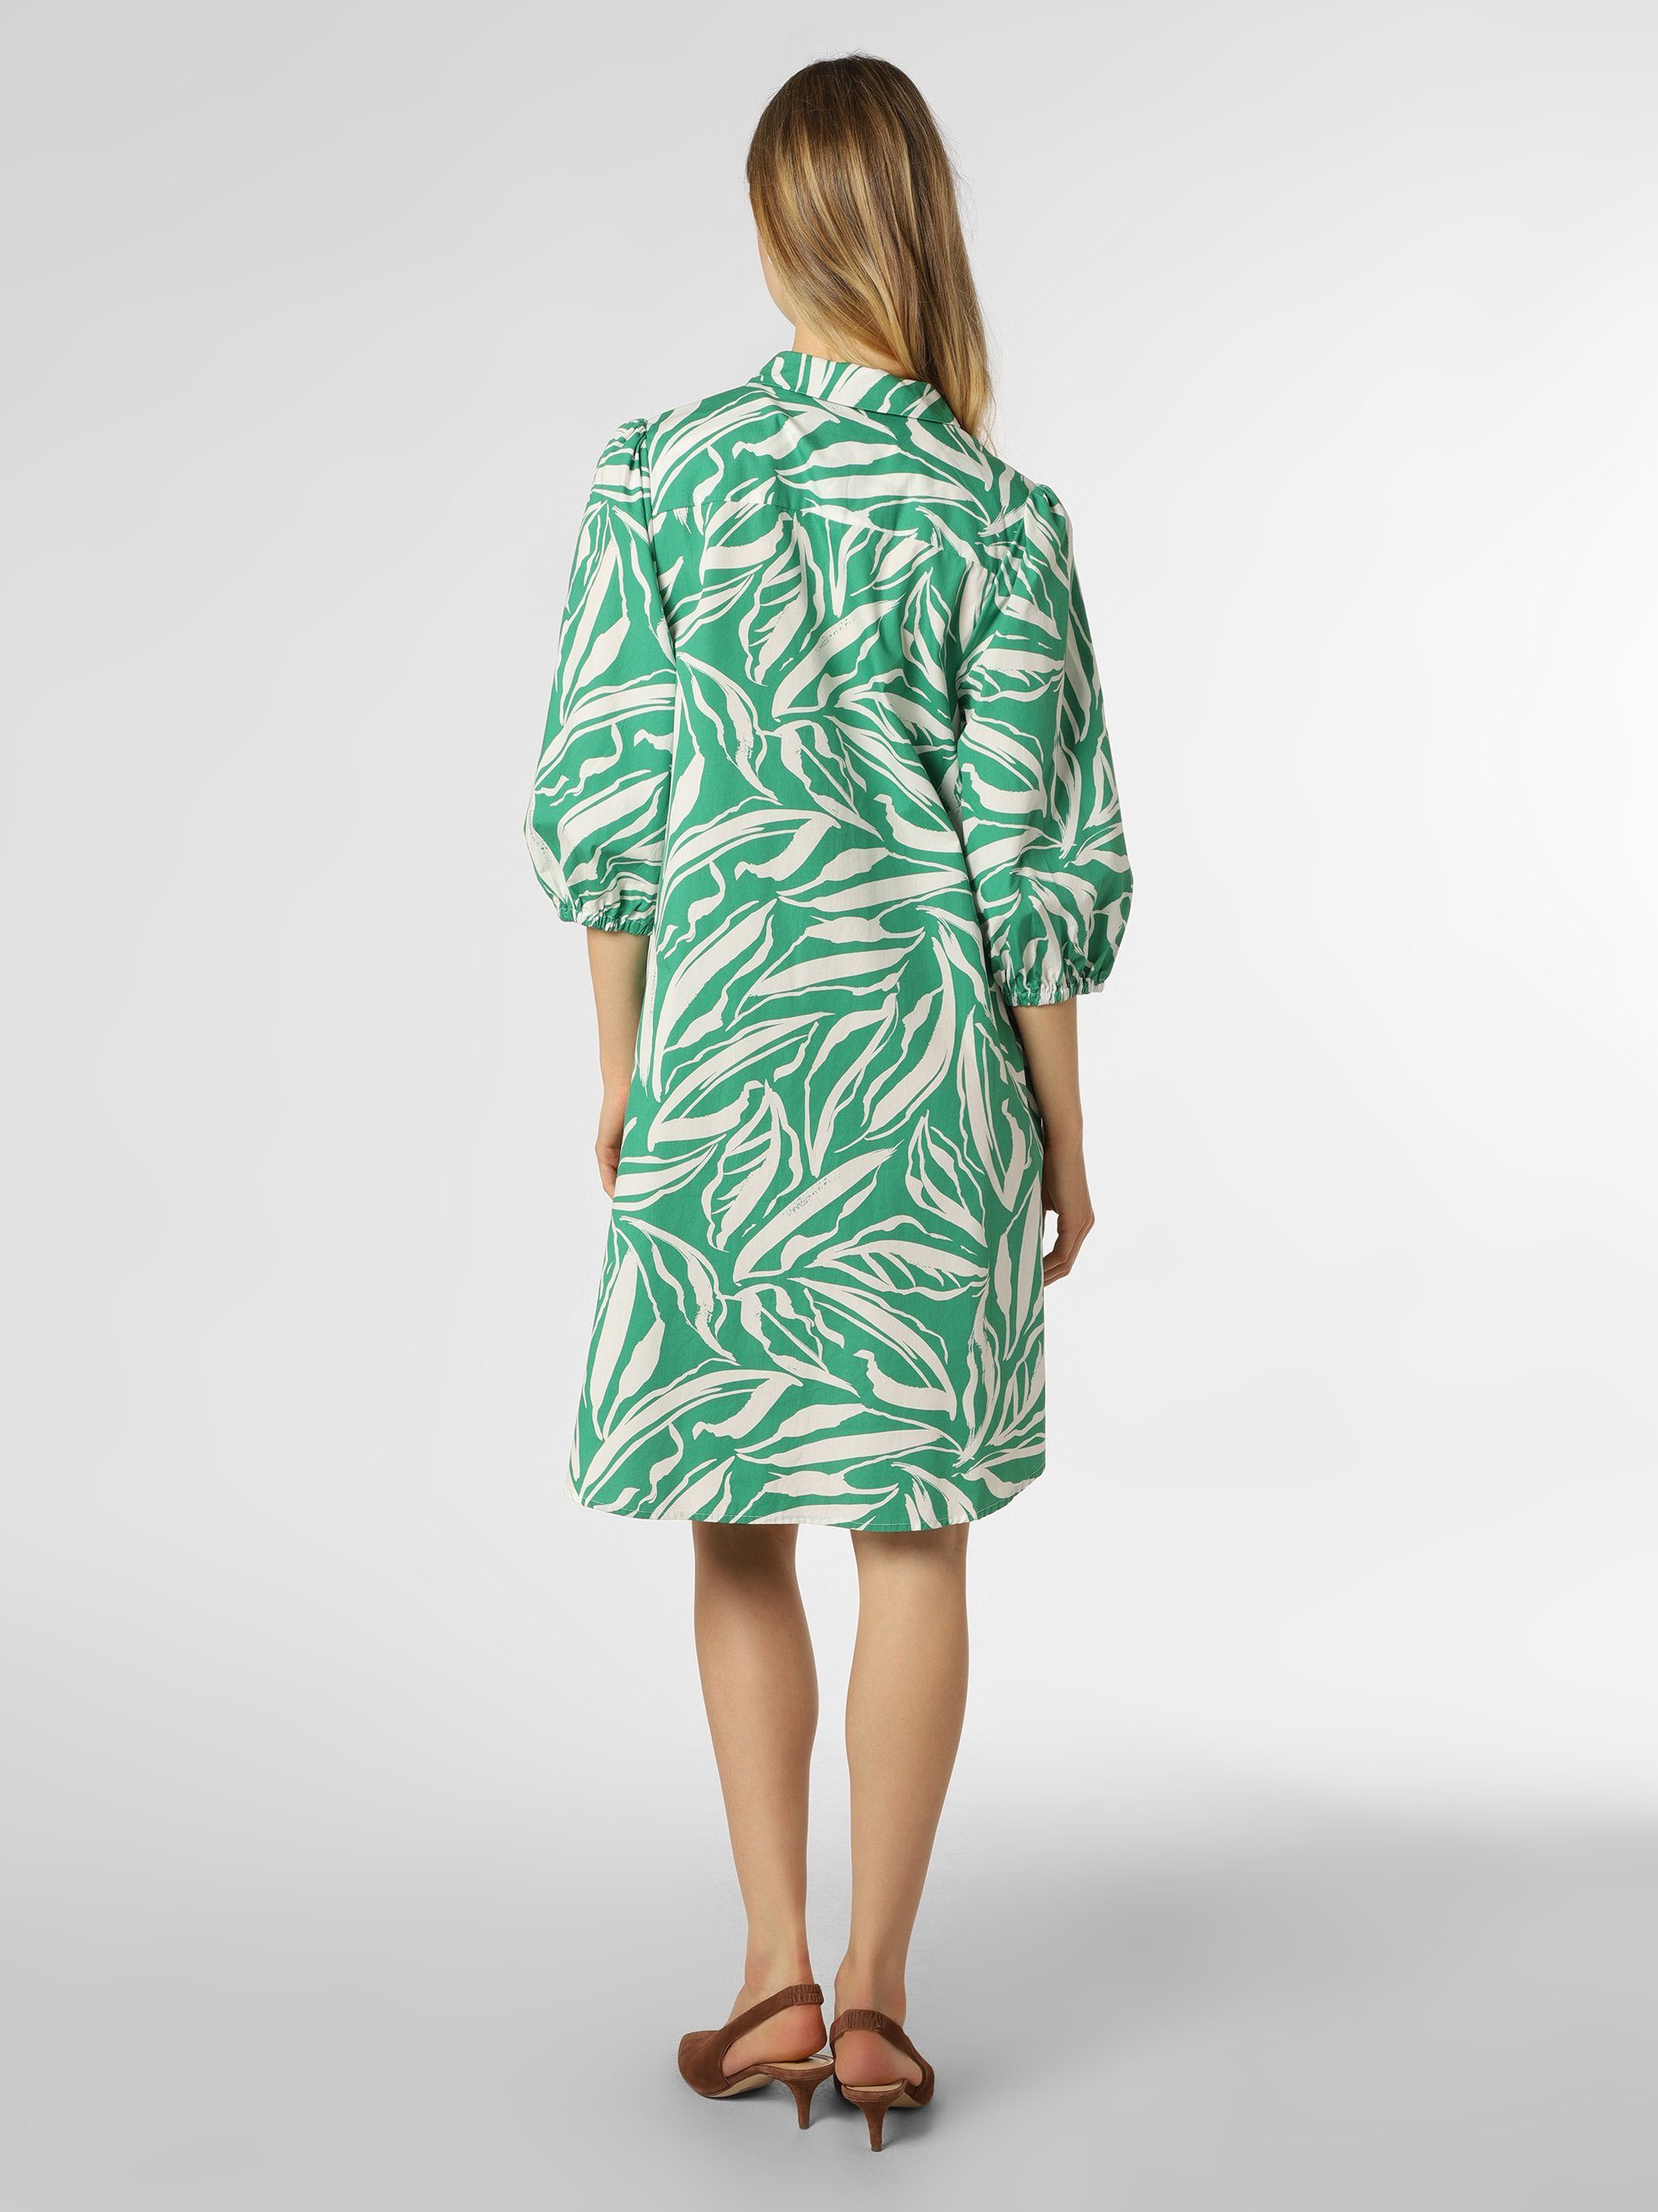 Marie Lund A-Linien-Kleid grün weiß